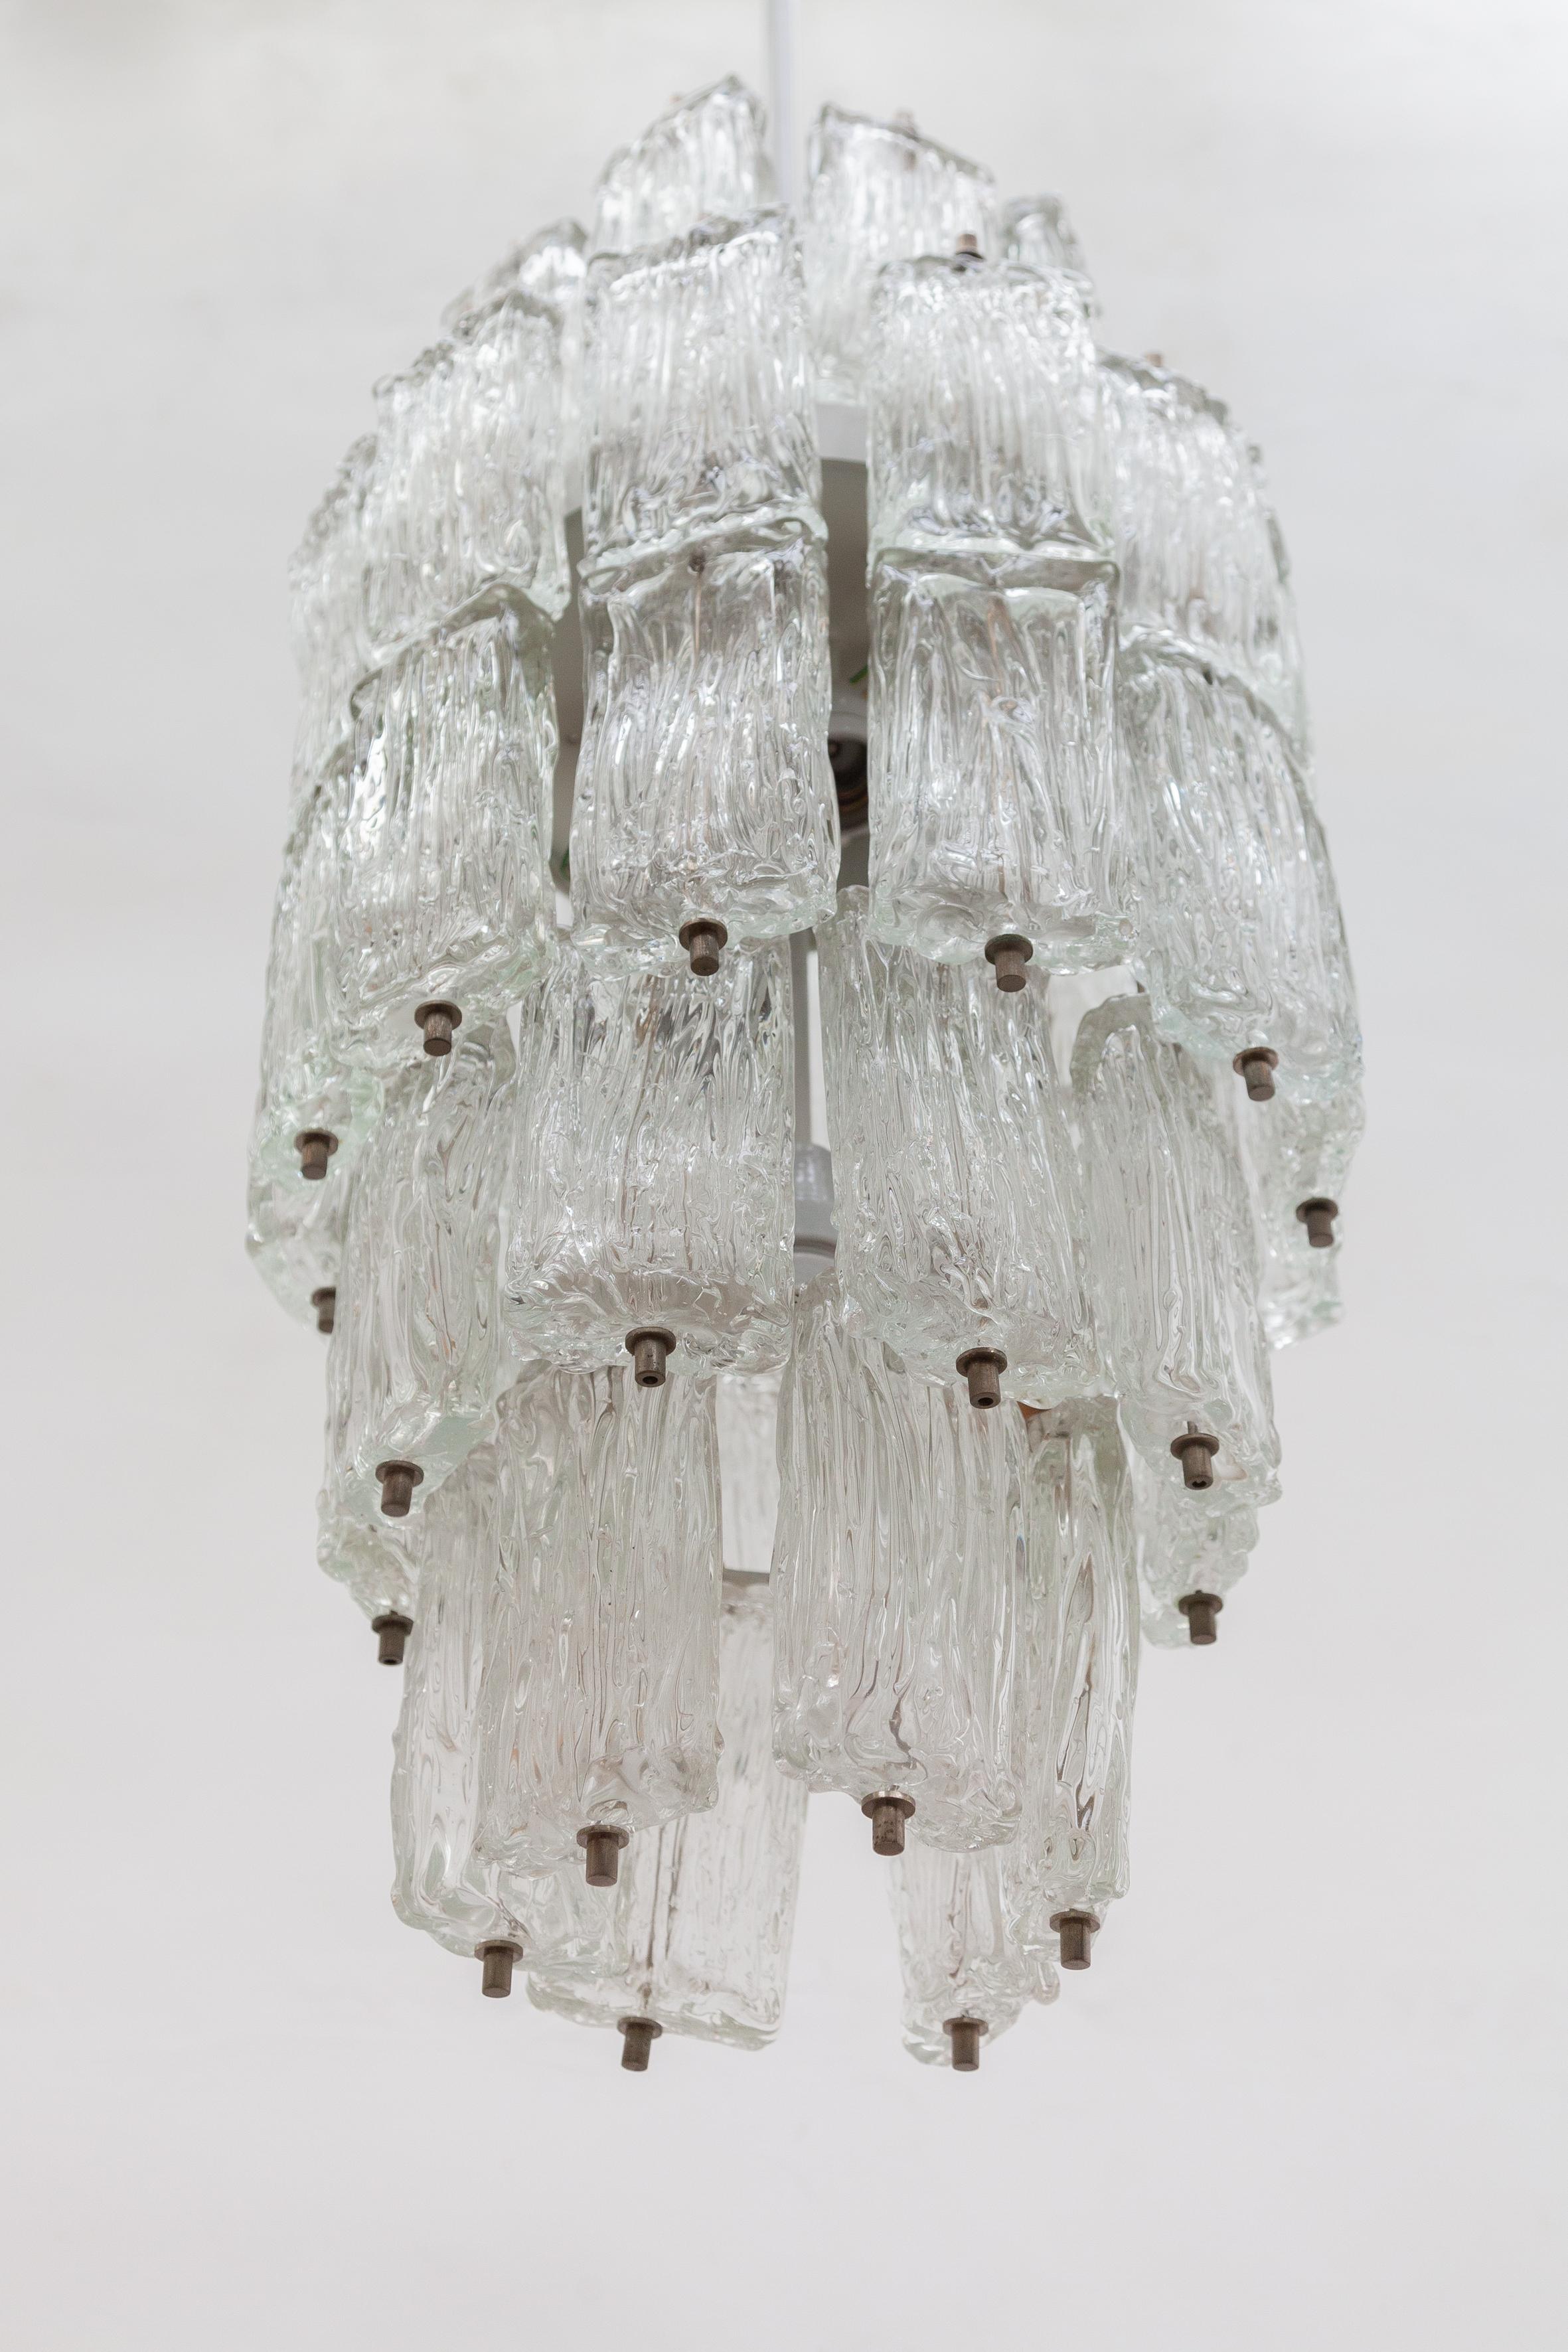 Venini, großer Kronleuchter aus strukturiertem Klarglas, Iced, fünf Etagen, Murano, Italien, 1960er Jahre (Geformt)